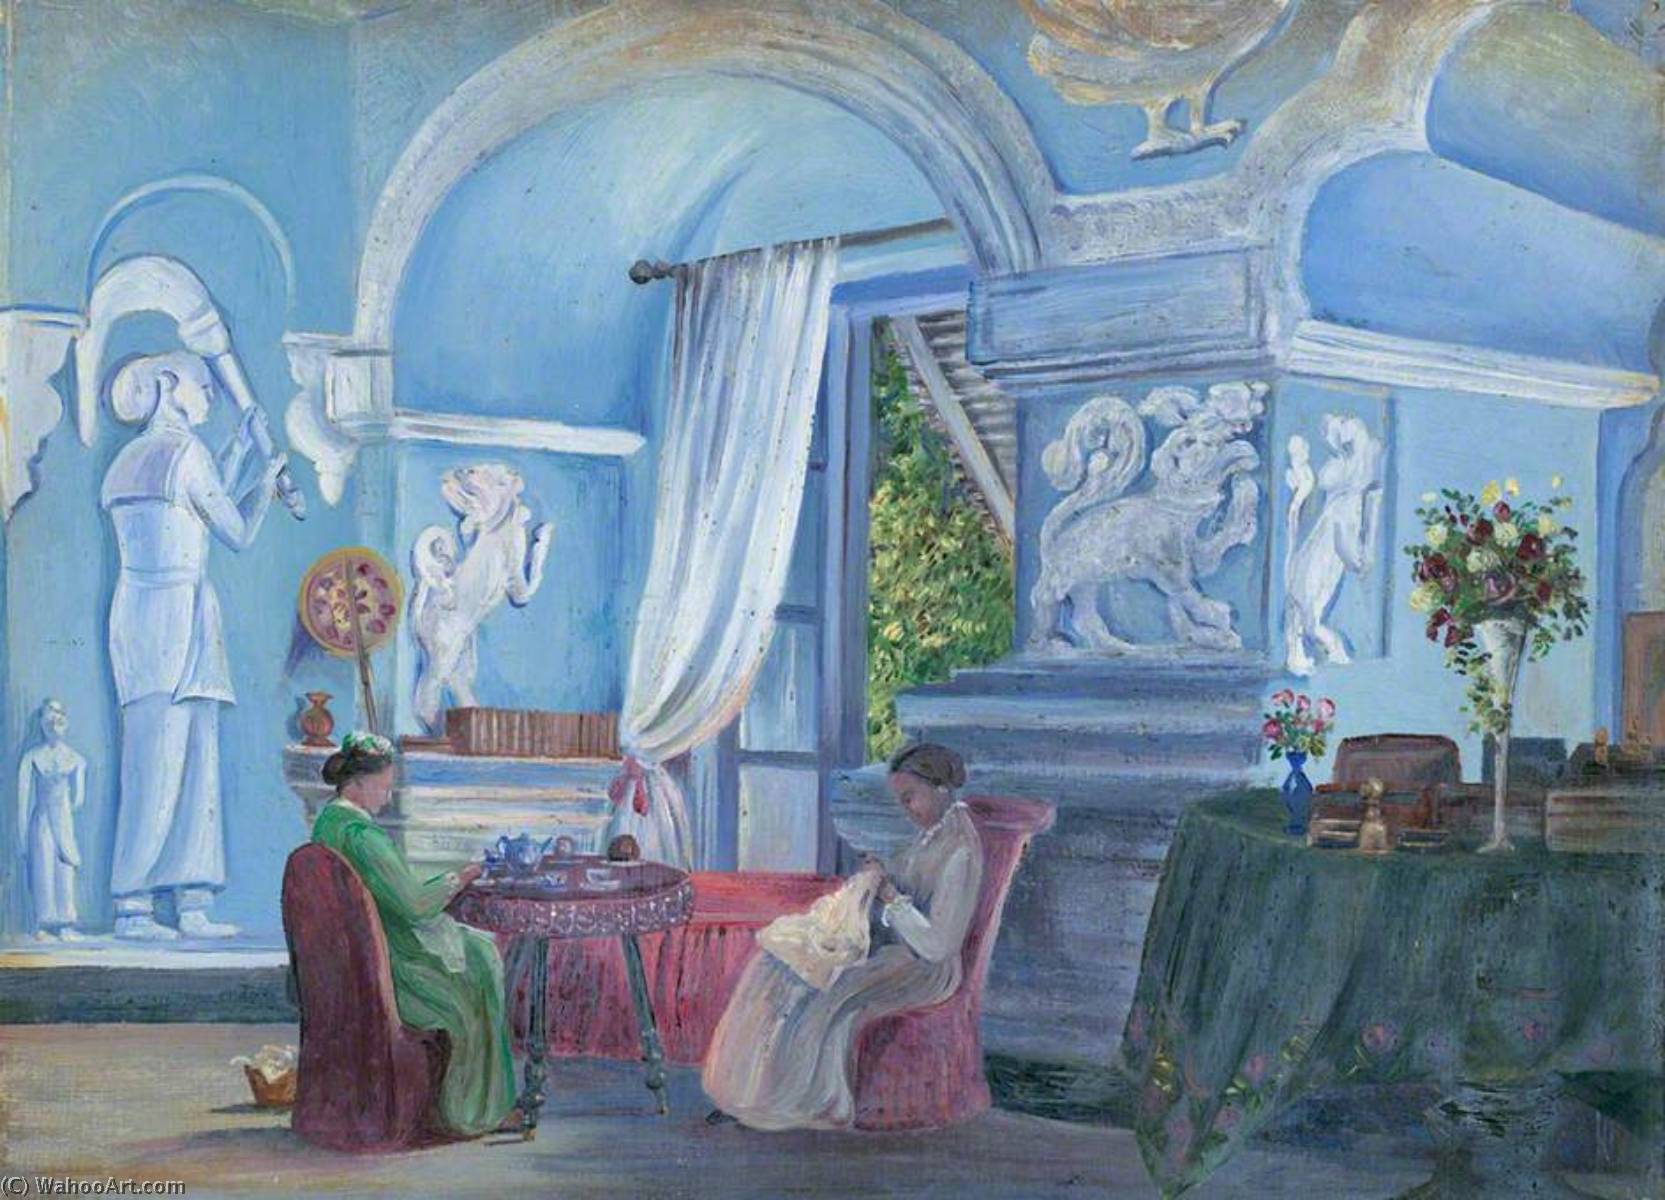 Achat Reproductions De Peintures Dans le Vieux Palais, Kandy, Ceylan (Sri Lanka), 1880 de Marianne North (1830-1890, United Kingdom) | ArtsDot.com